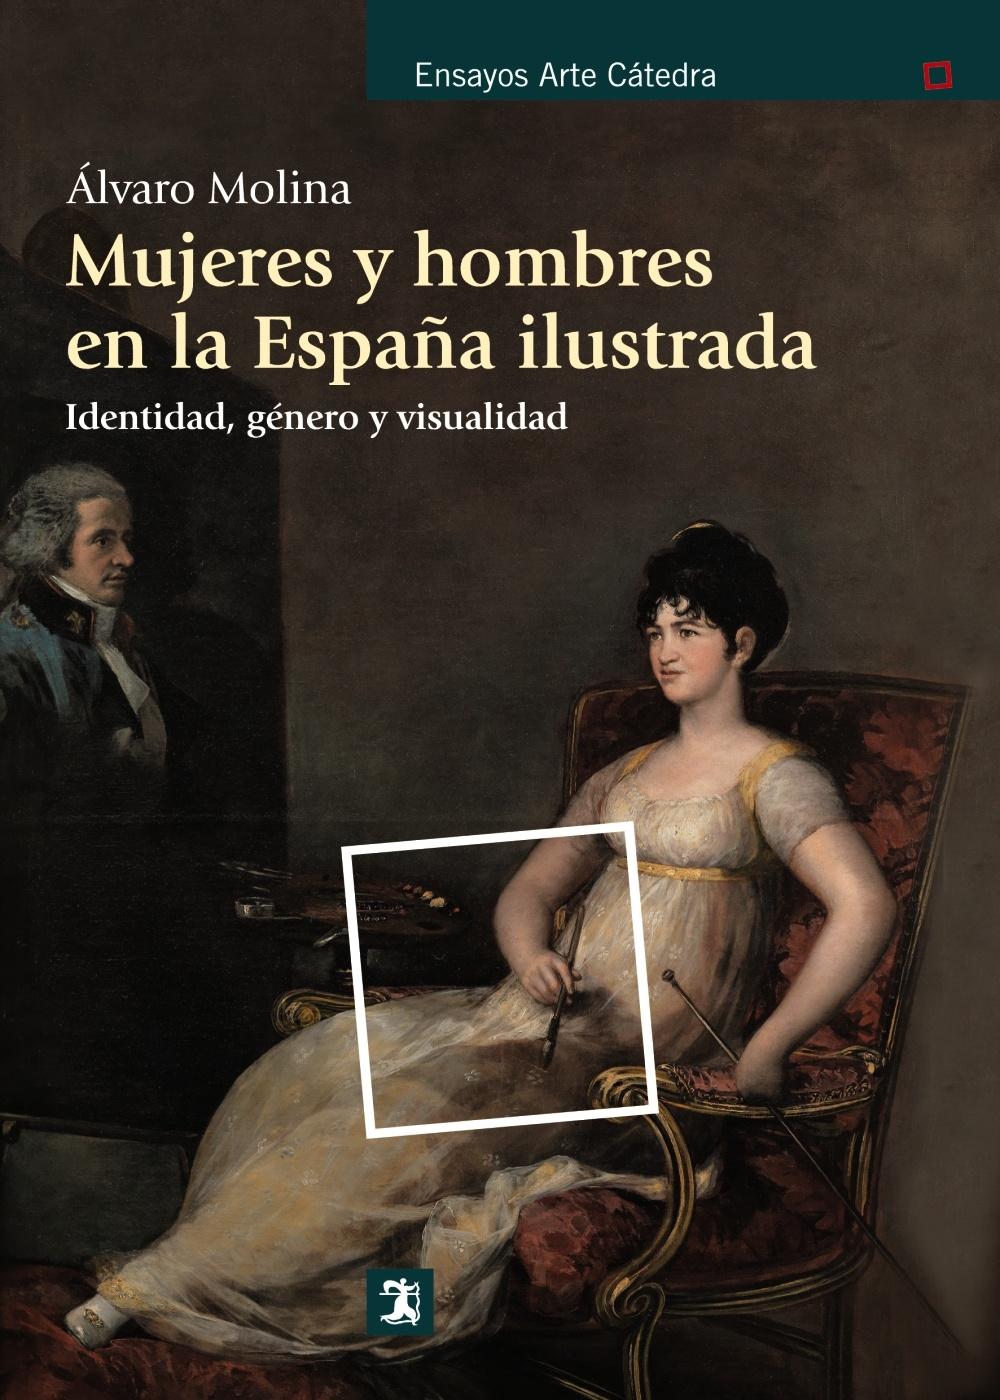 MUJERES Y HOMBRES EN LA ESPAÑA ILUSTRADA "IDENTIDAD, GENERO Y VISUALIDAD"